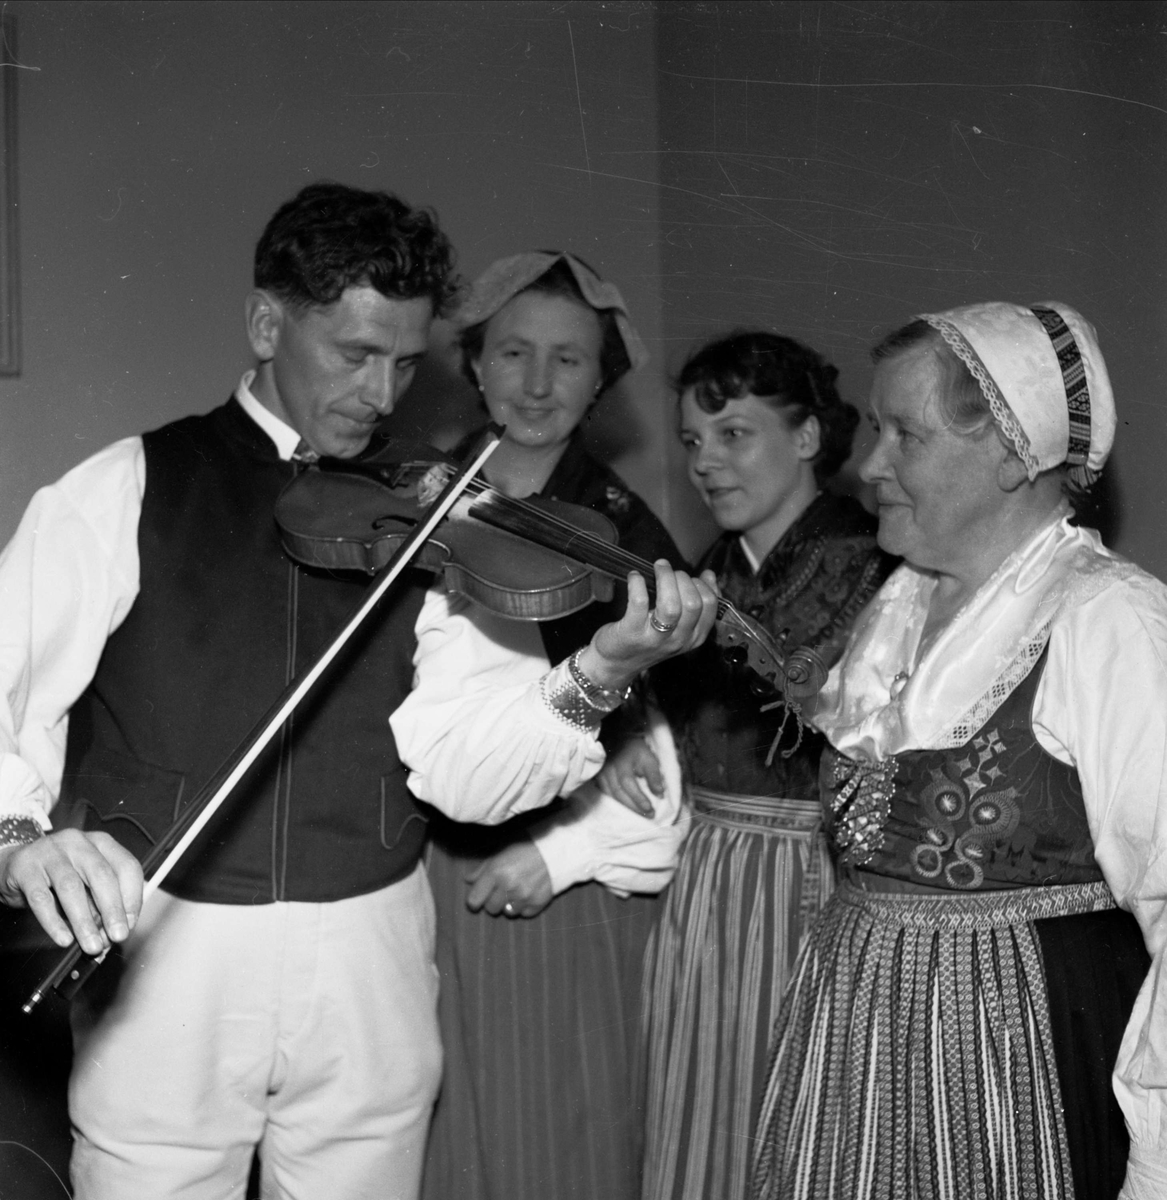 Dalaföreningens spelmanslag i Folkets hus, Uppsala 1952